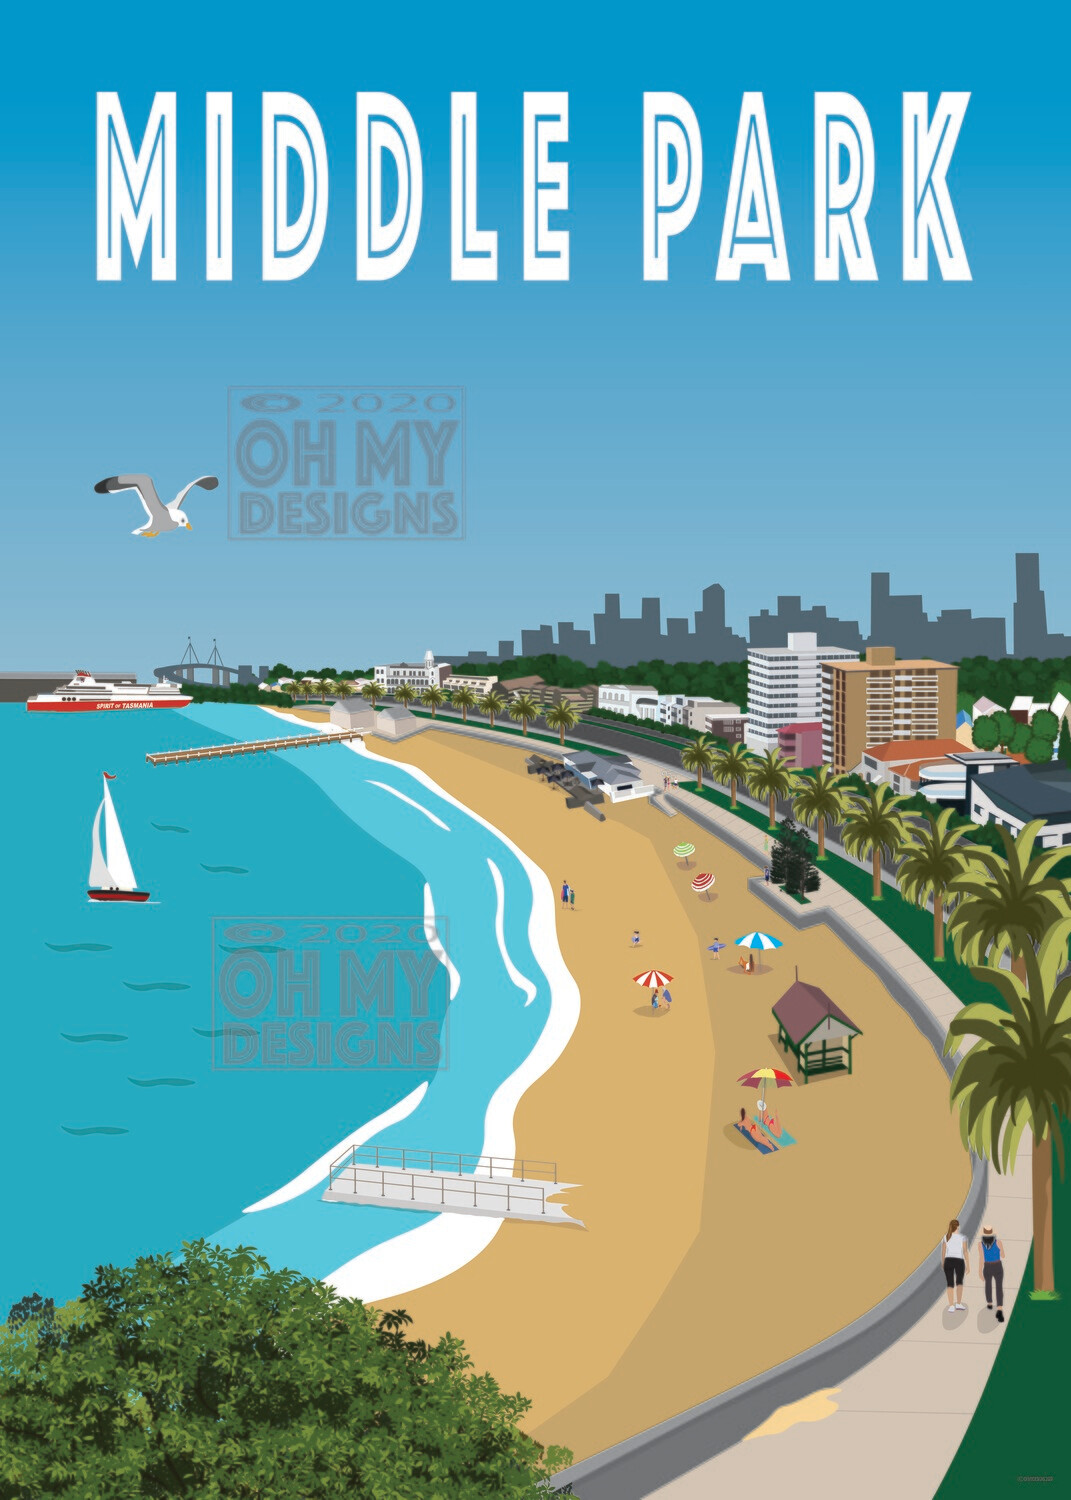 Melbourne - Middle Park